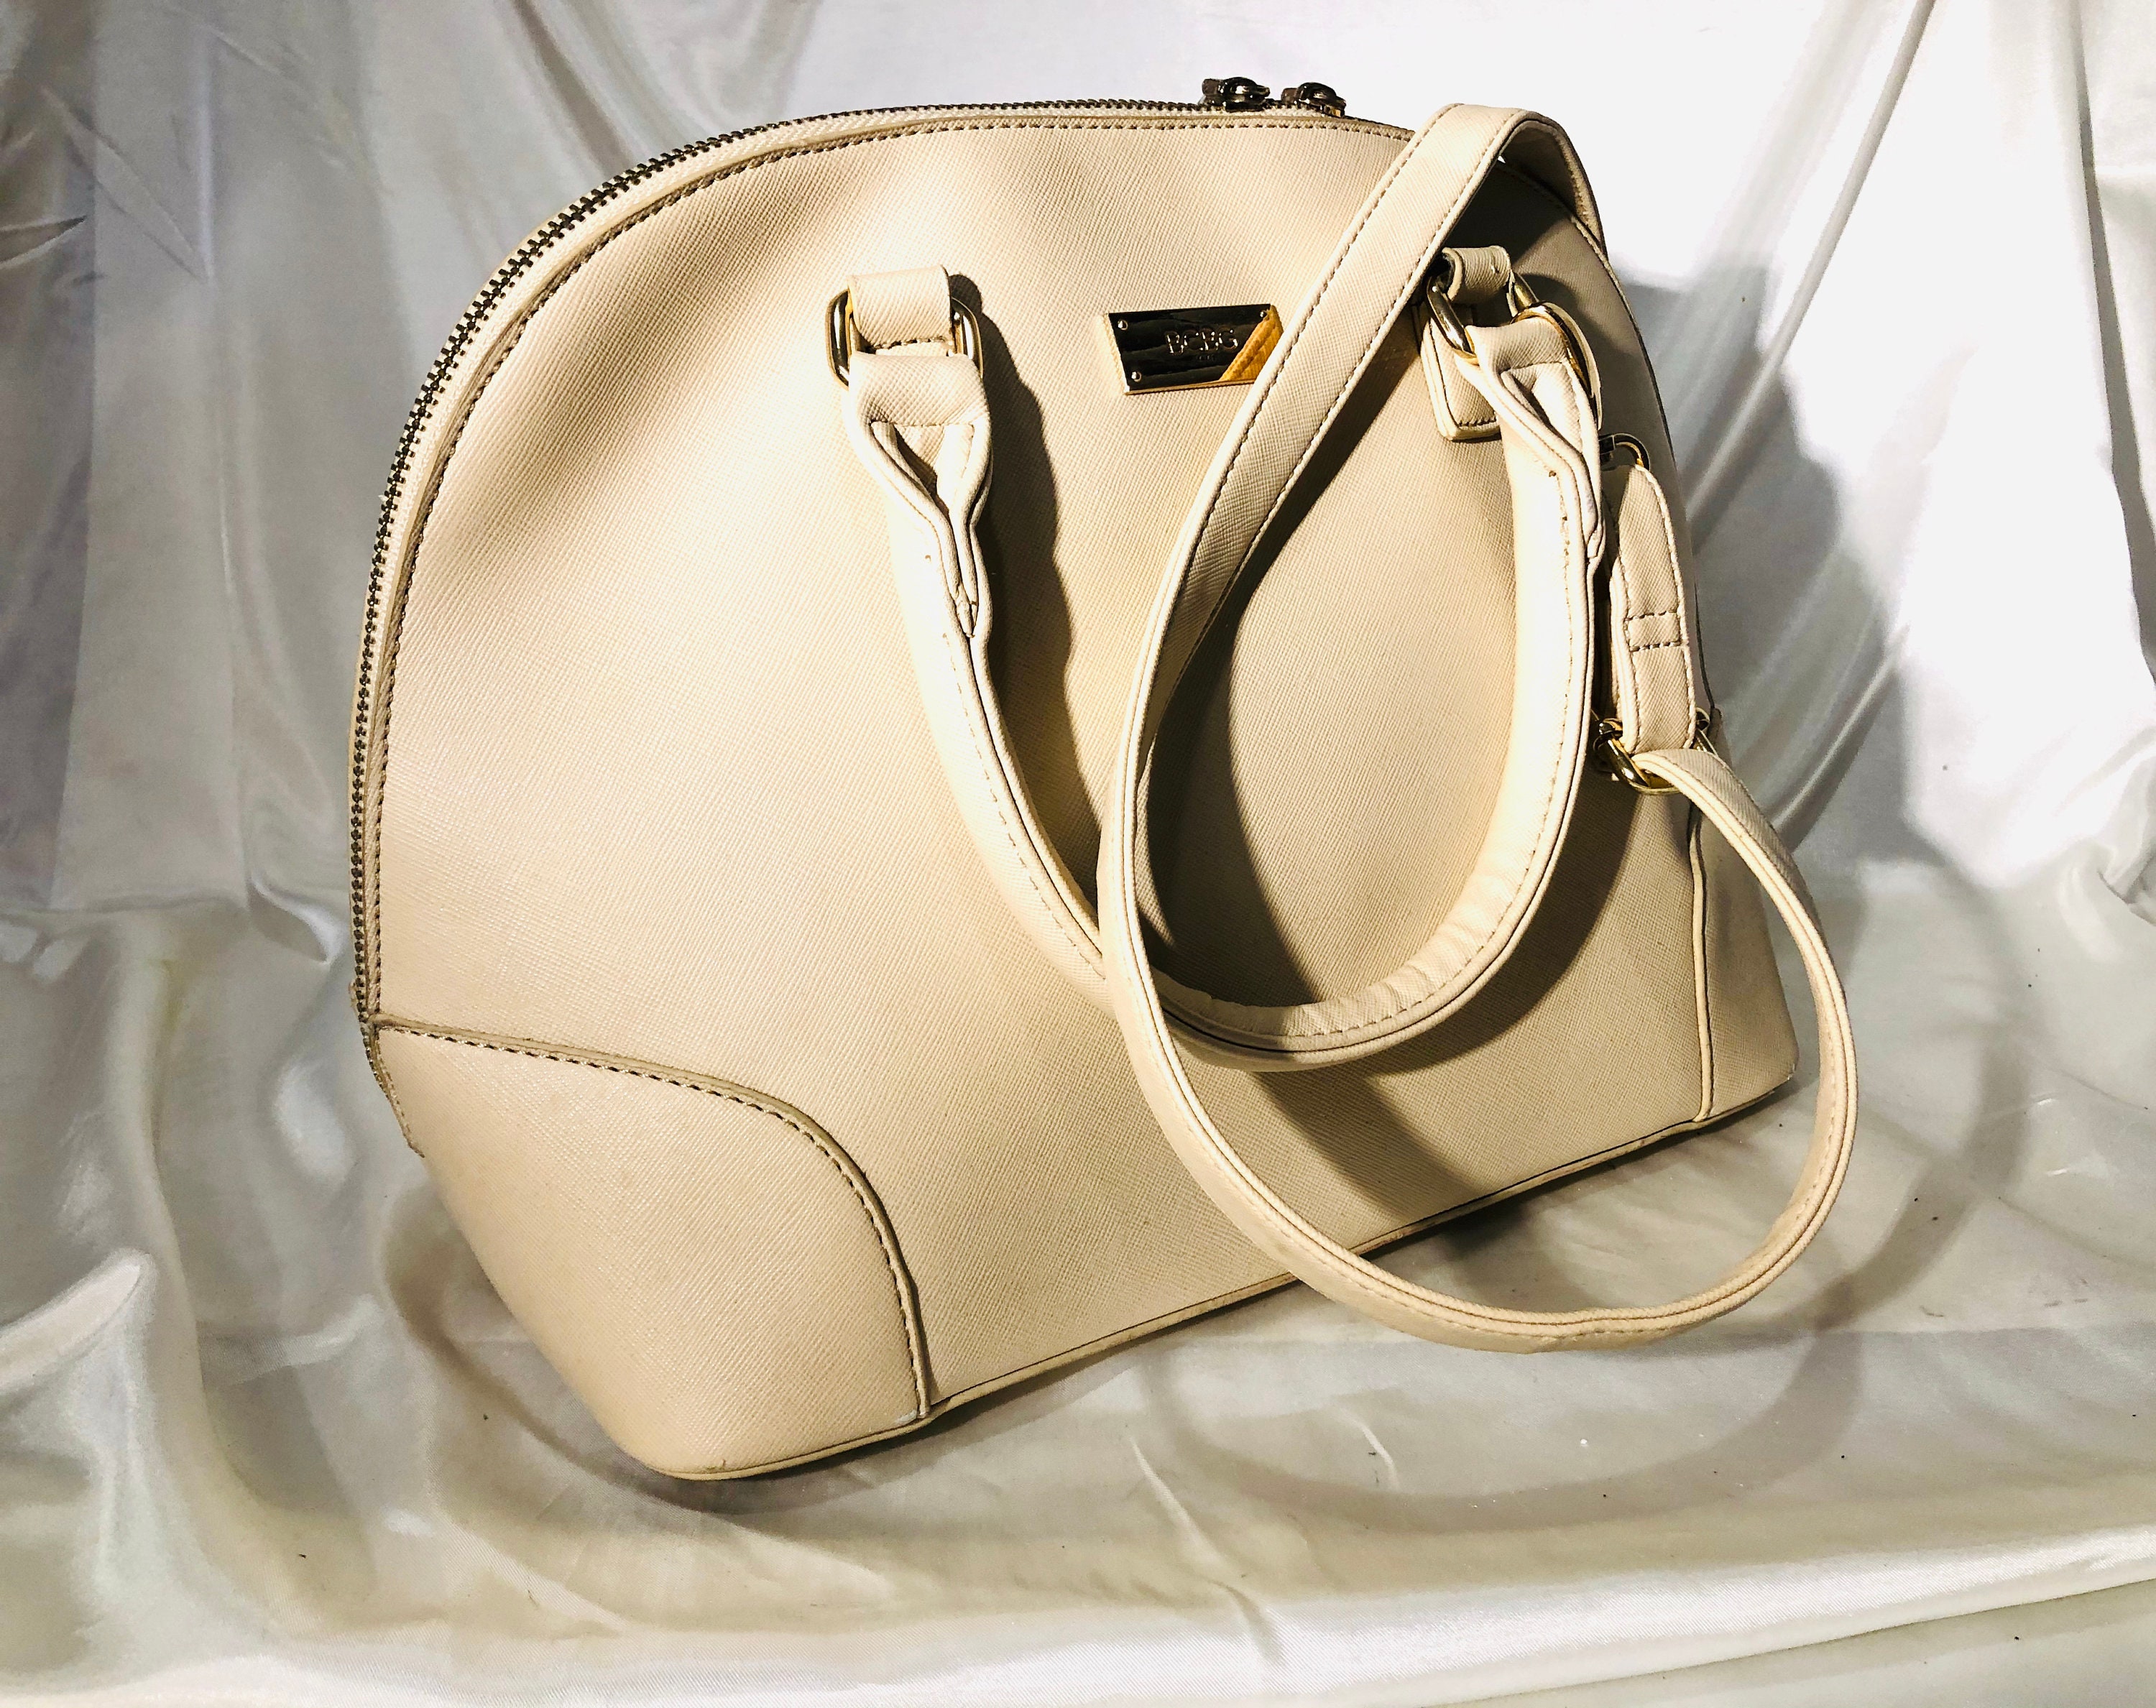 BCBG Paris crossbody pebbled faux leather purse | Faux leather purse, Purses,  Faux leather